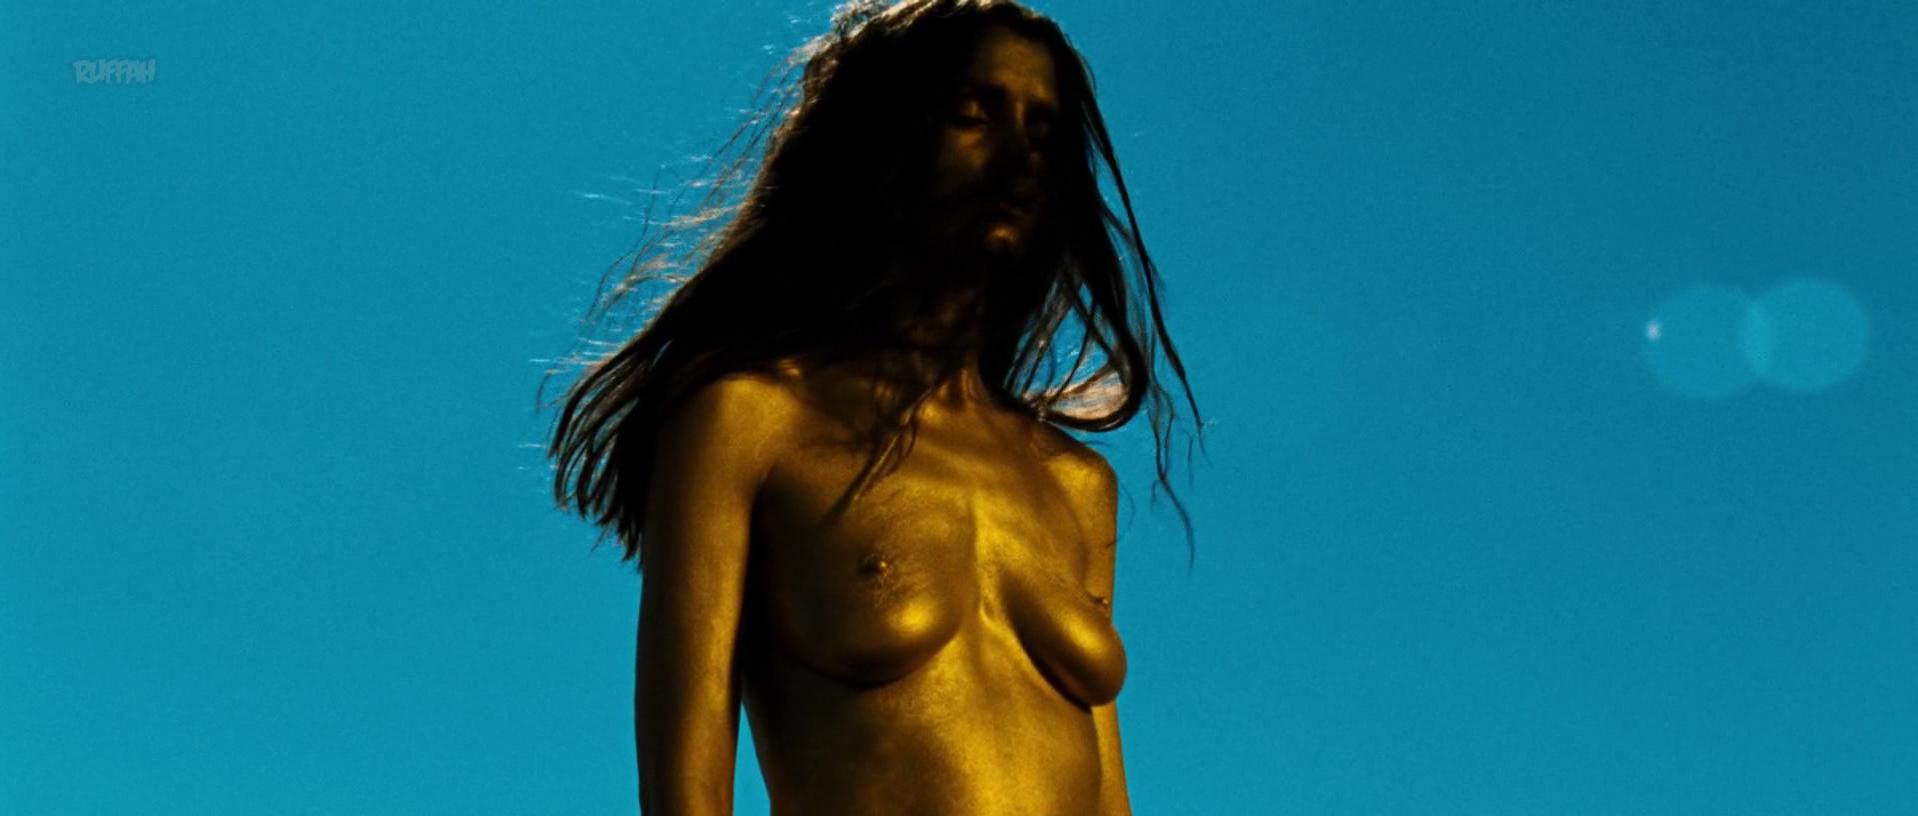 Nude Video Celebs Marine Sainsily Nude Elina Lowensohn